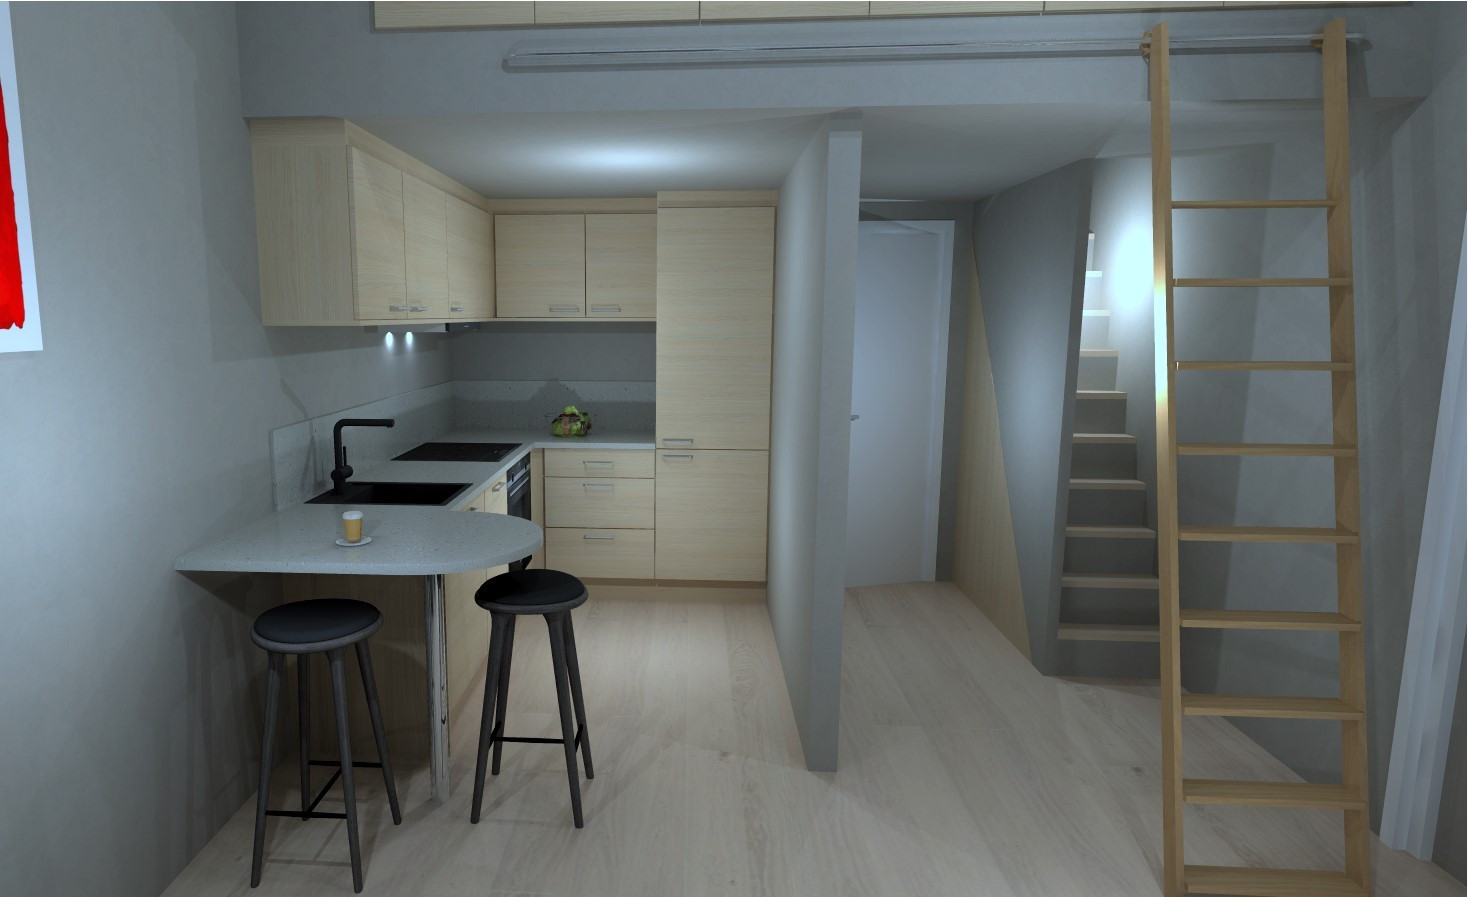 Planløsning alternativ nr. 3: Illustrasjonsbilde av kjøkken fra Knapphus Kjøkkensenter. Kjøkkenet kan kjøpes som egen innredningspakke.